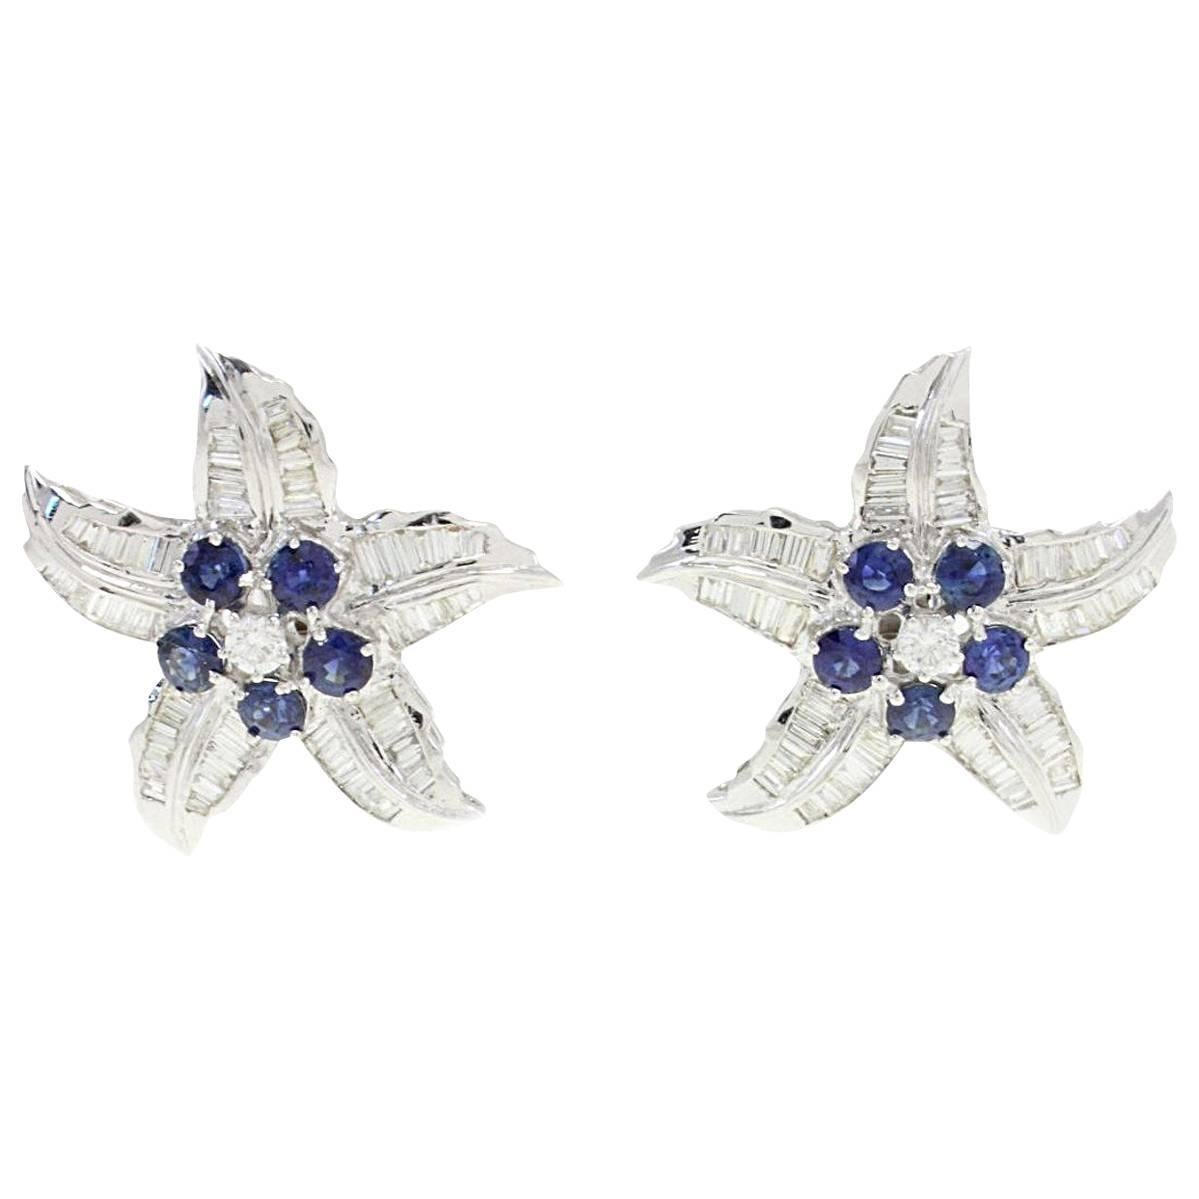  Baguette Cut Diamond Blue Sapphire Star Earrings For Sale